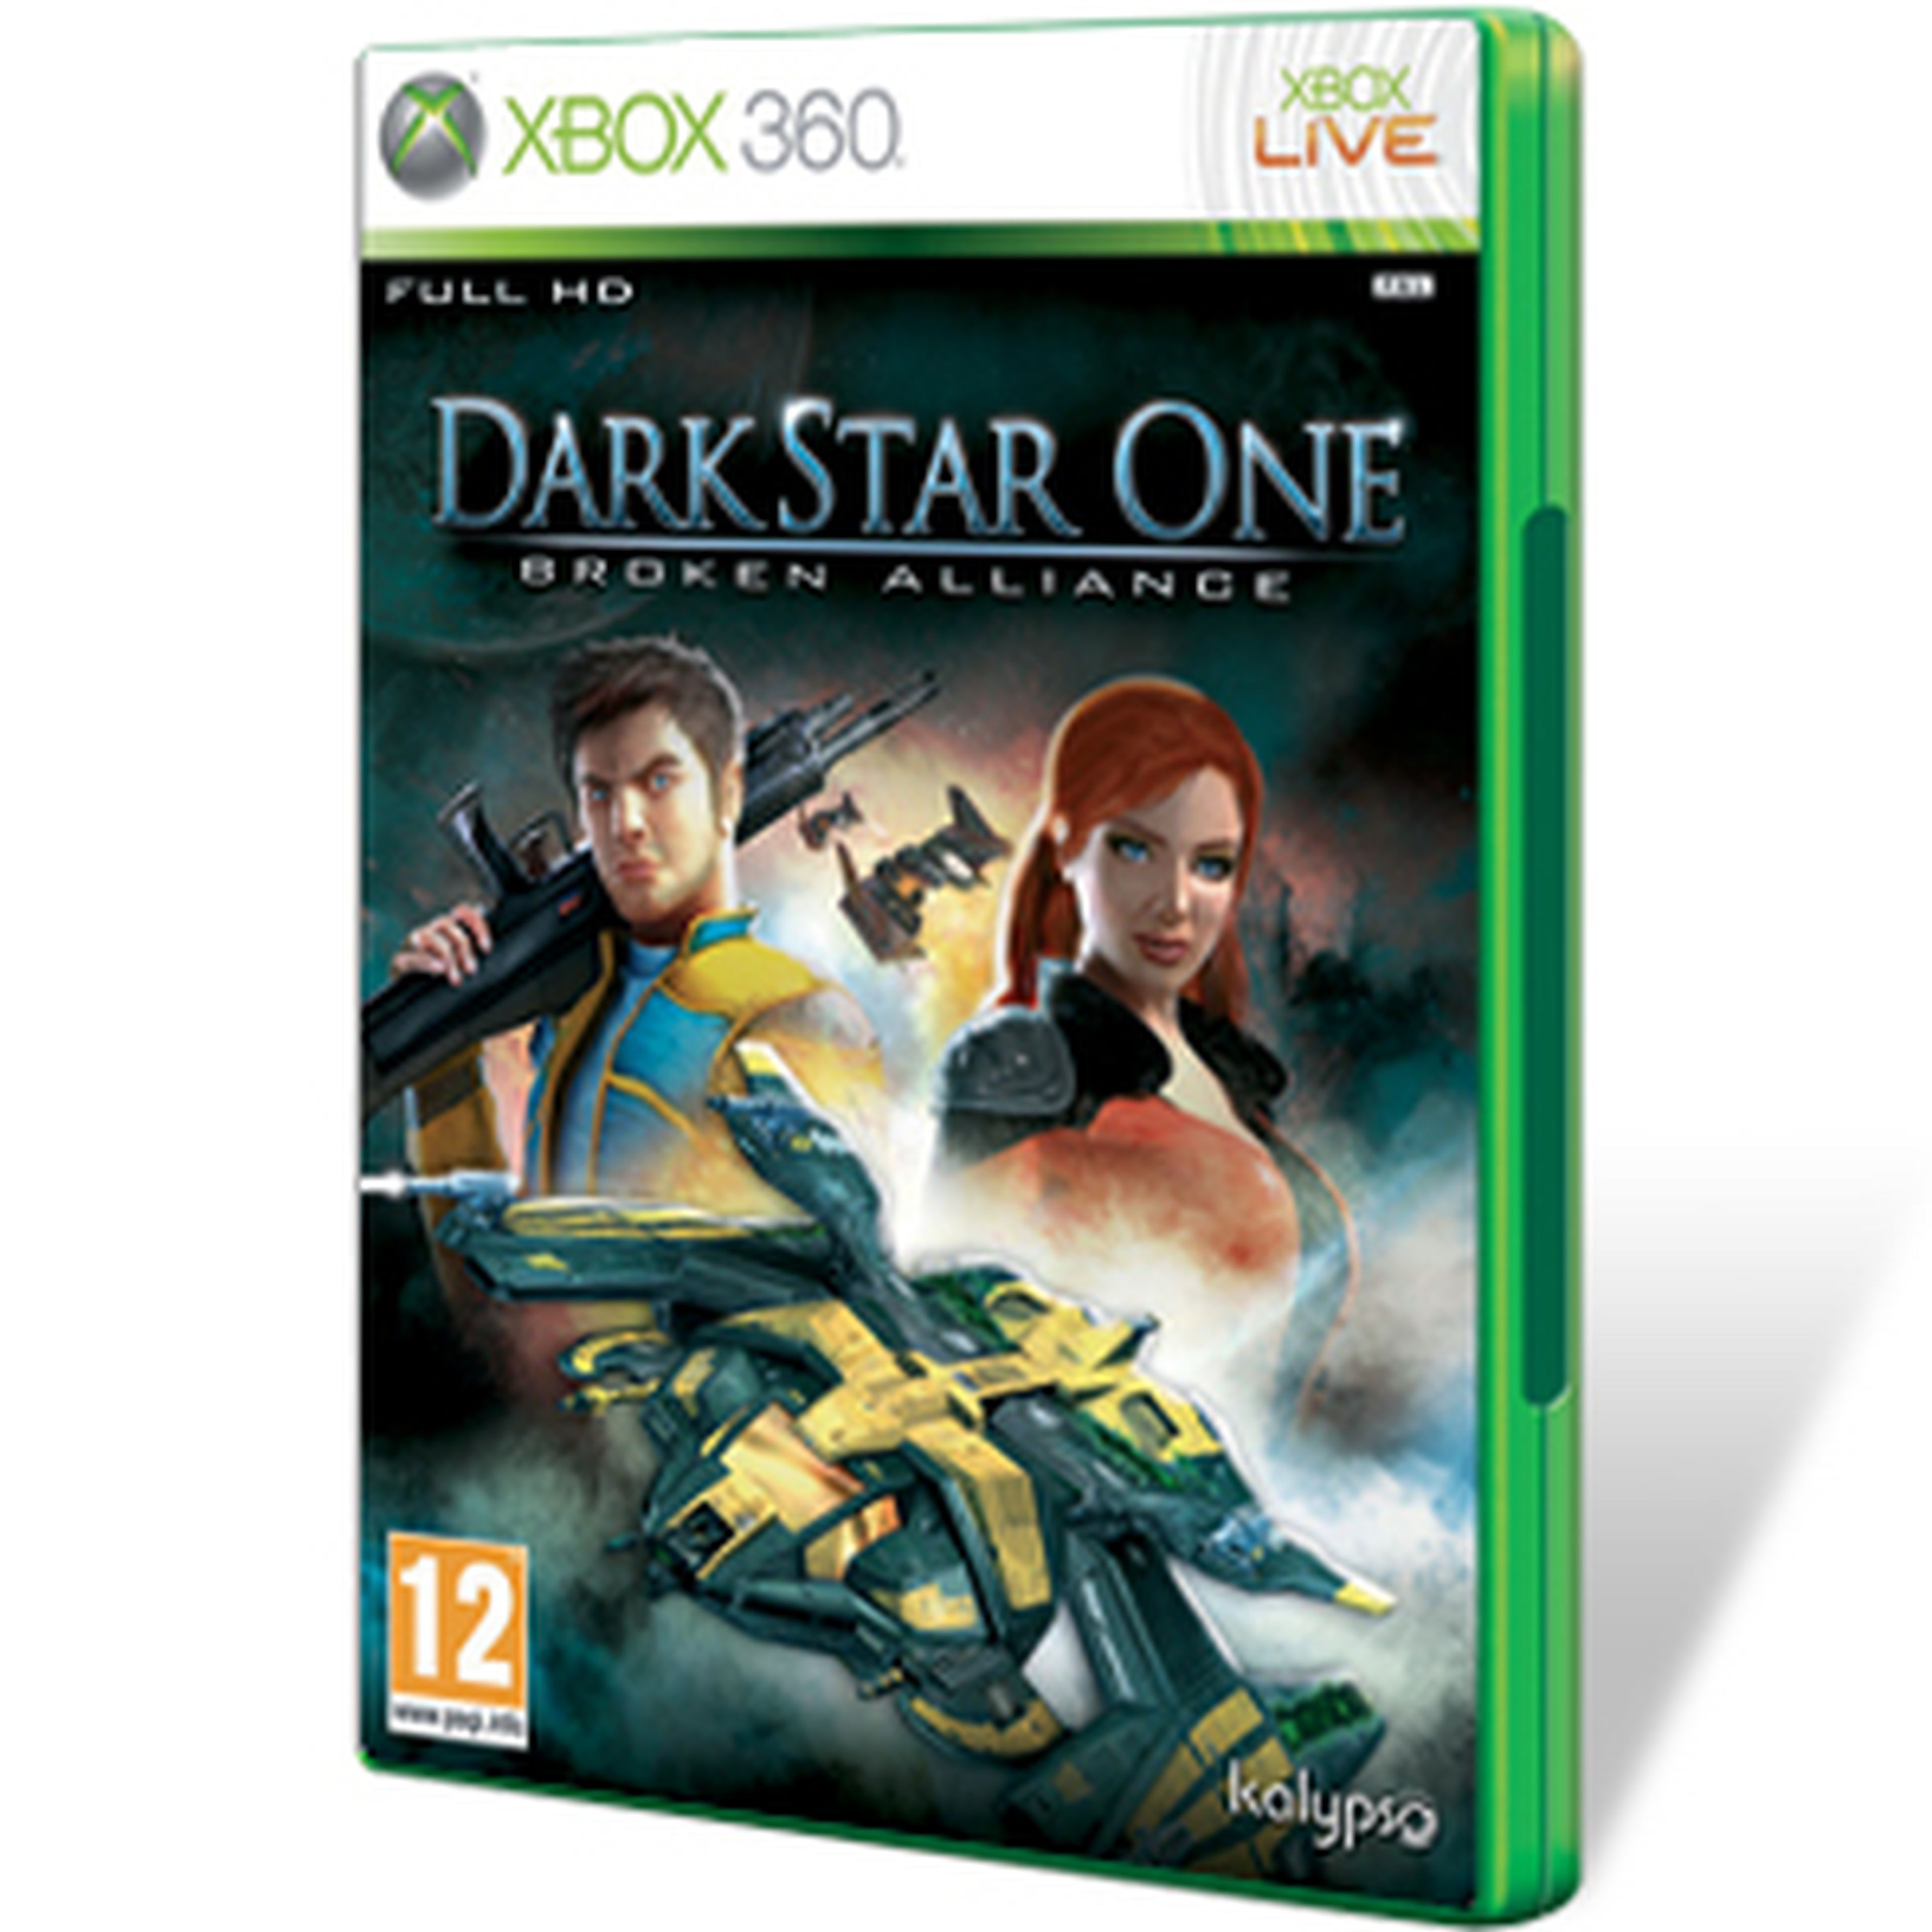 DarkStar One Broken Alliance para 360